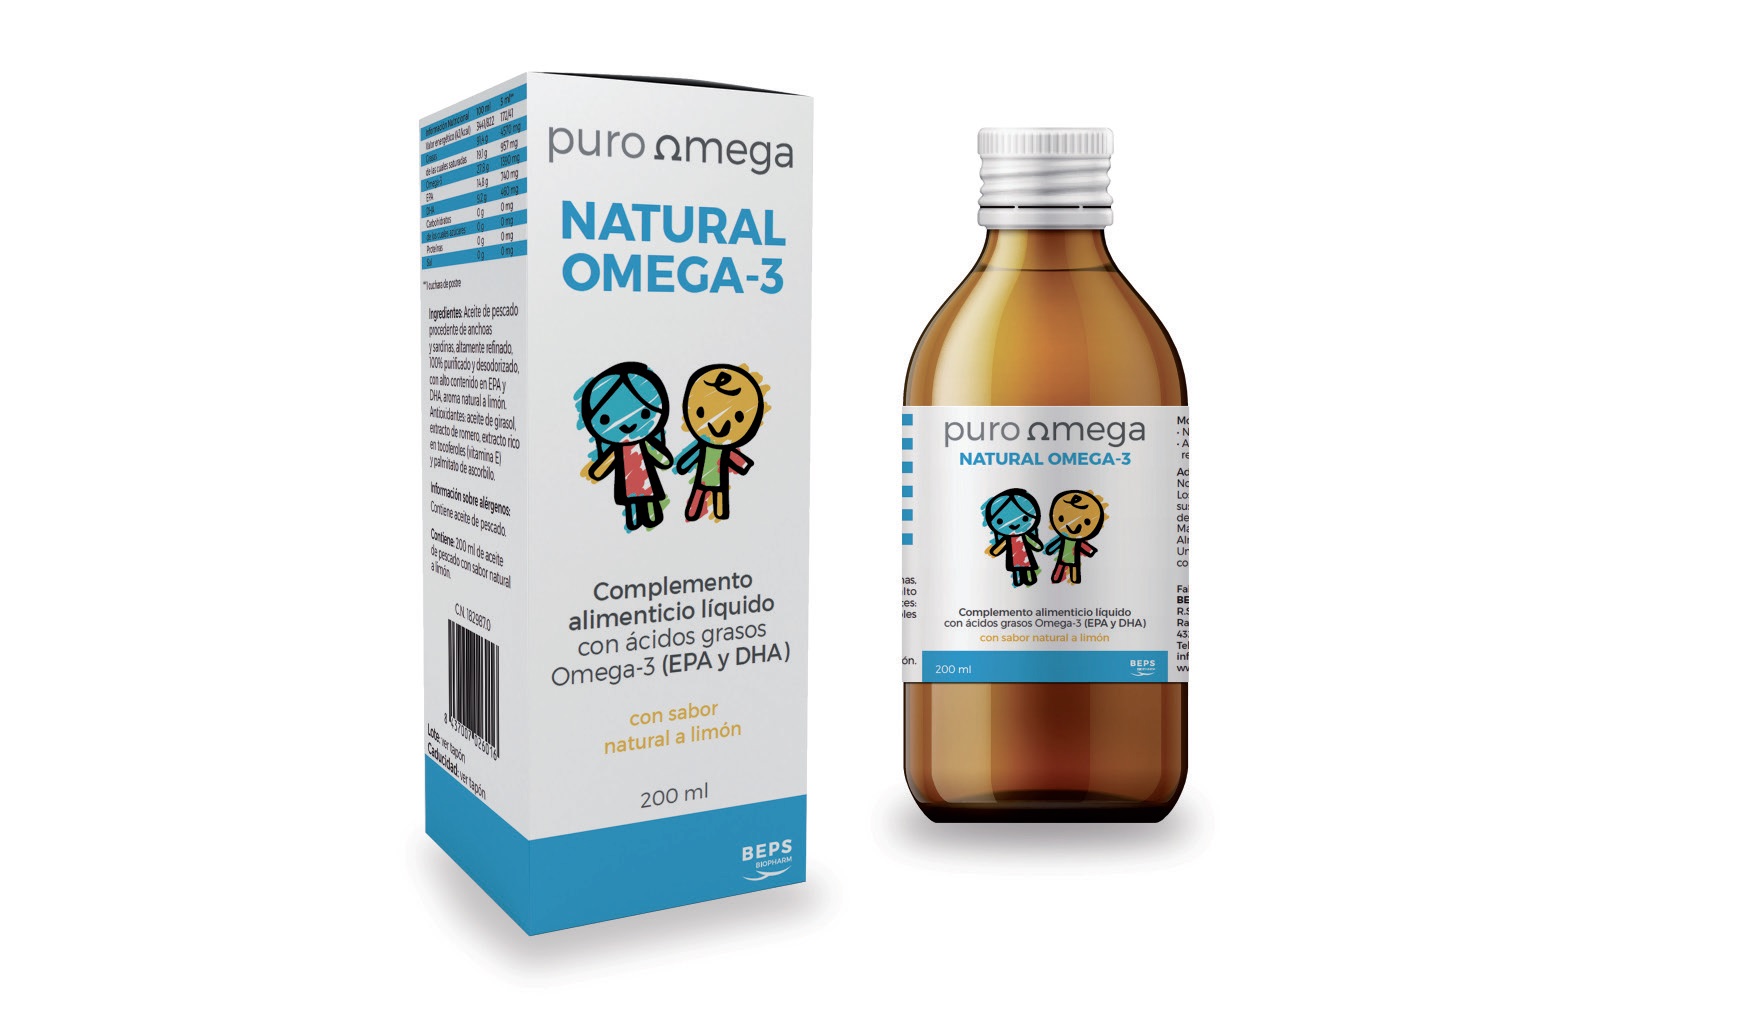 Pure Omega Natural Omega 3 Crianças, 200 ml